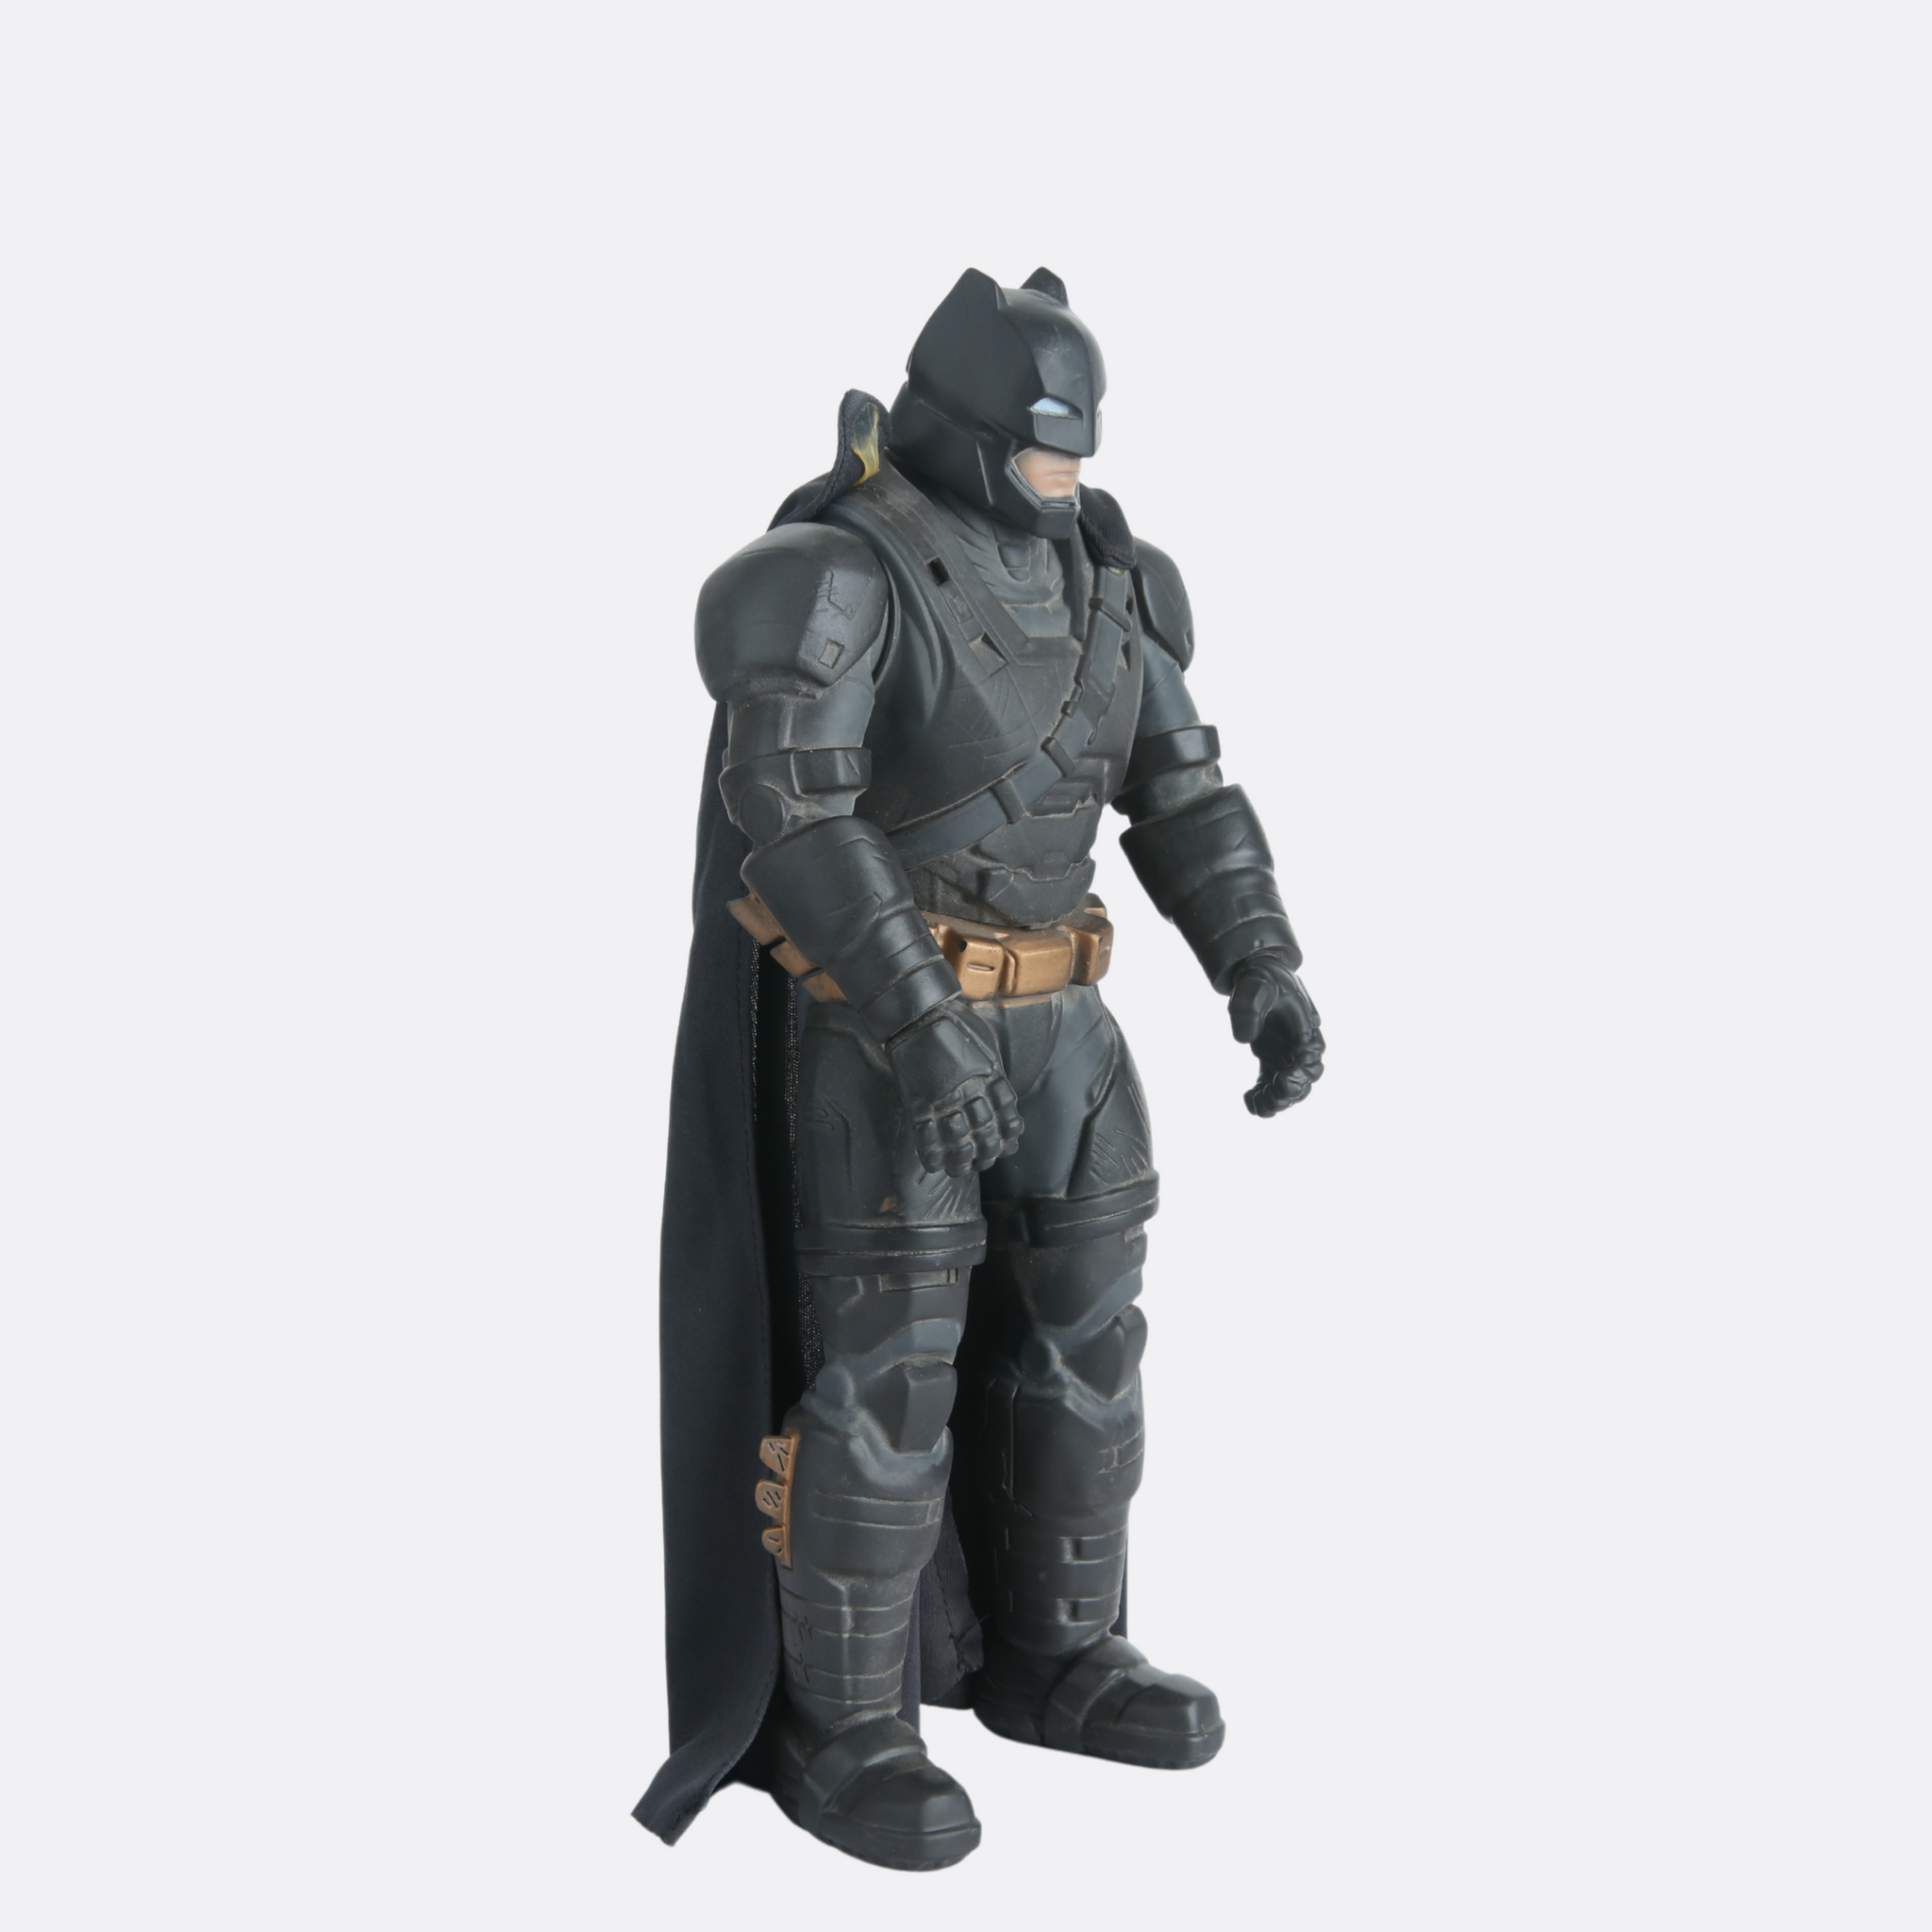 Bat Man Action Figure